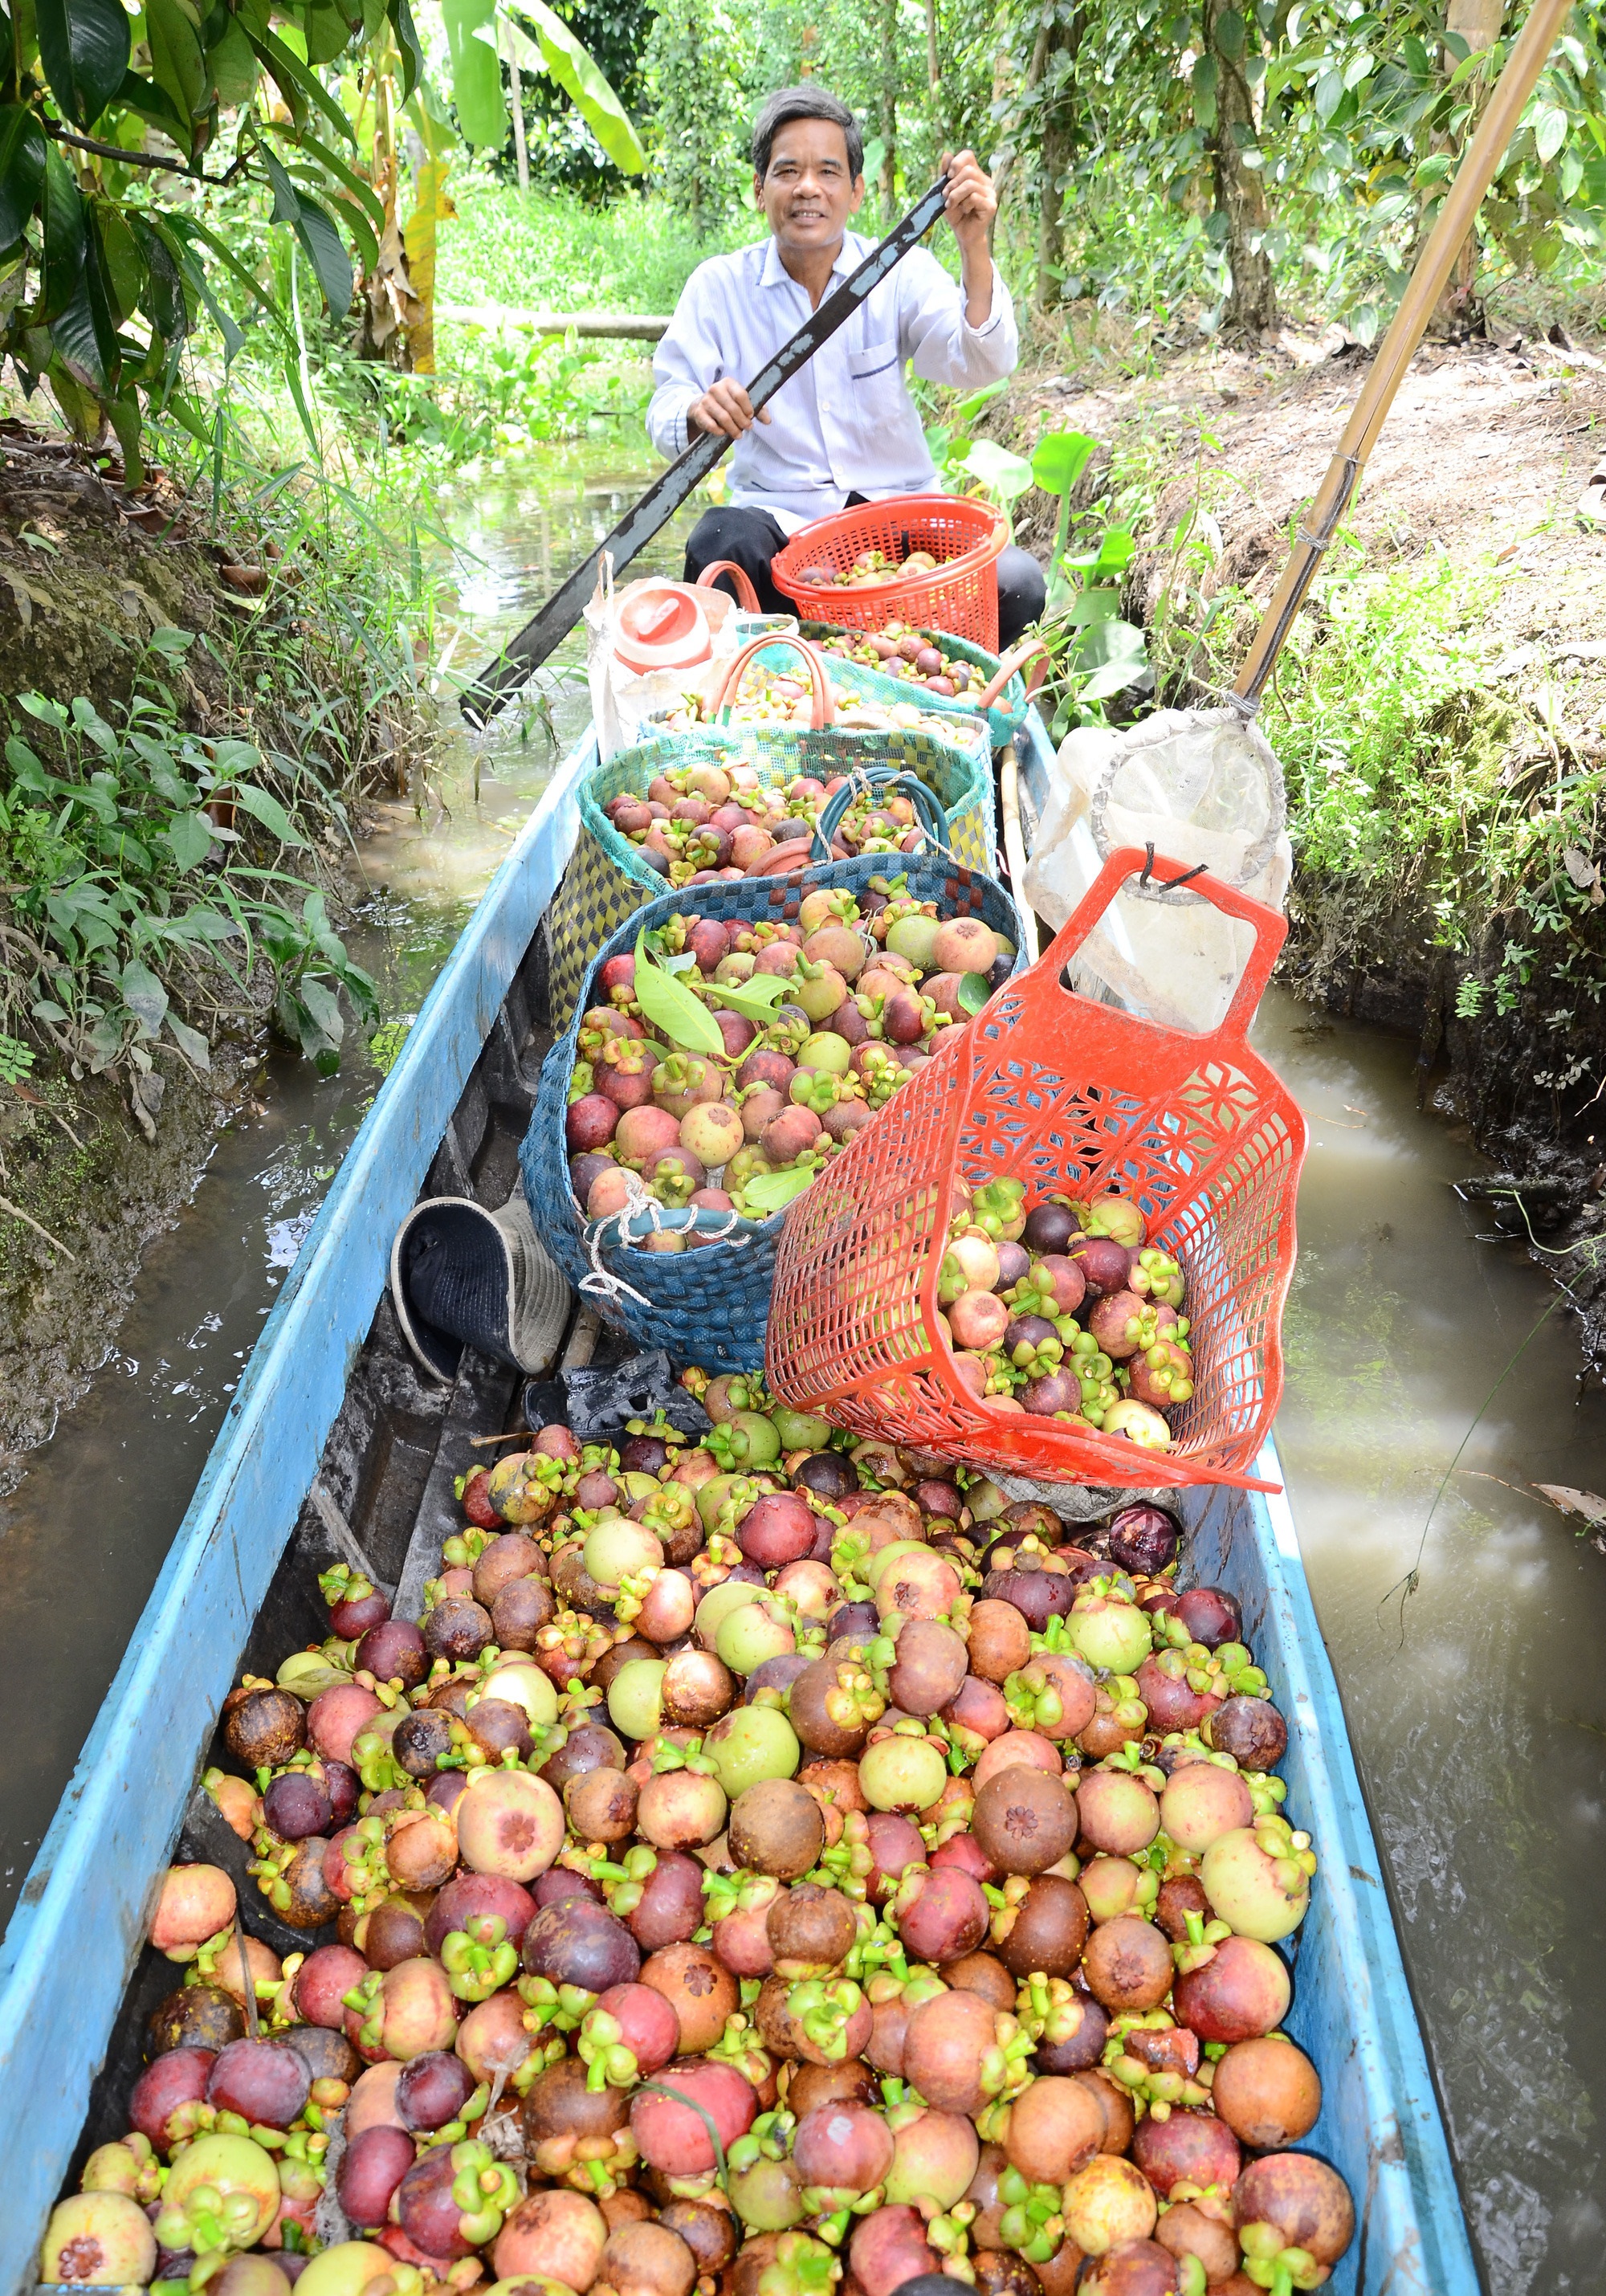 Nông dân xã Ngọc Hòa ở Kiên Giang ngày càng khấm khá với nghề làm vườn, trồng trái cây đặc sản  - Ảnh 1.